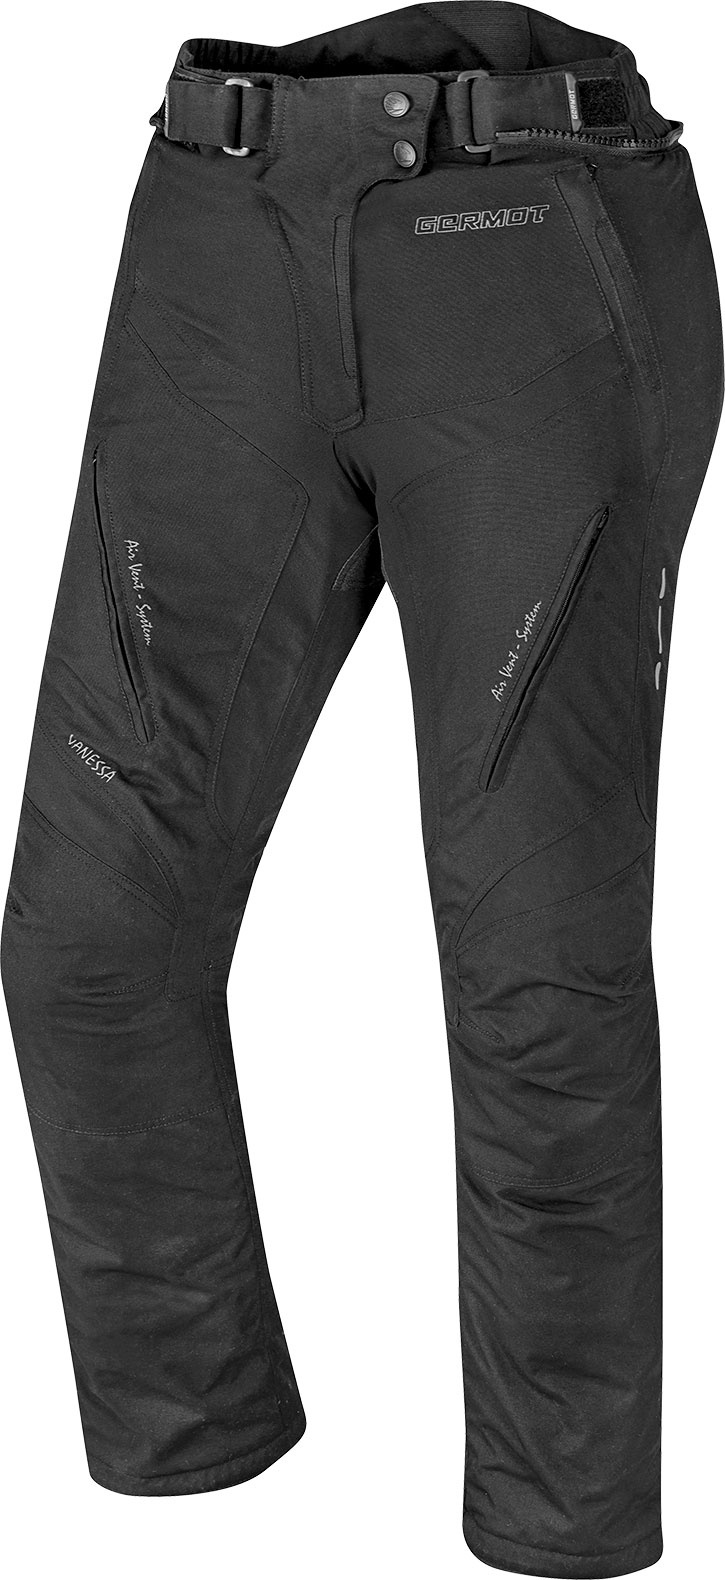 Germot Vanessa, textile Jeans/Pantalons étanches - Noir/Gris - 34